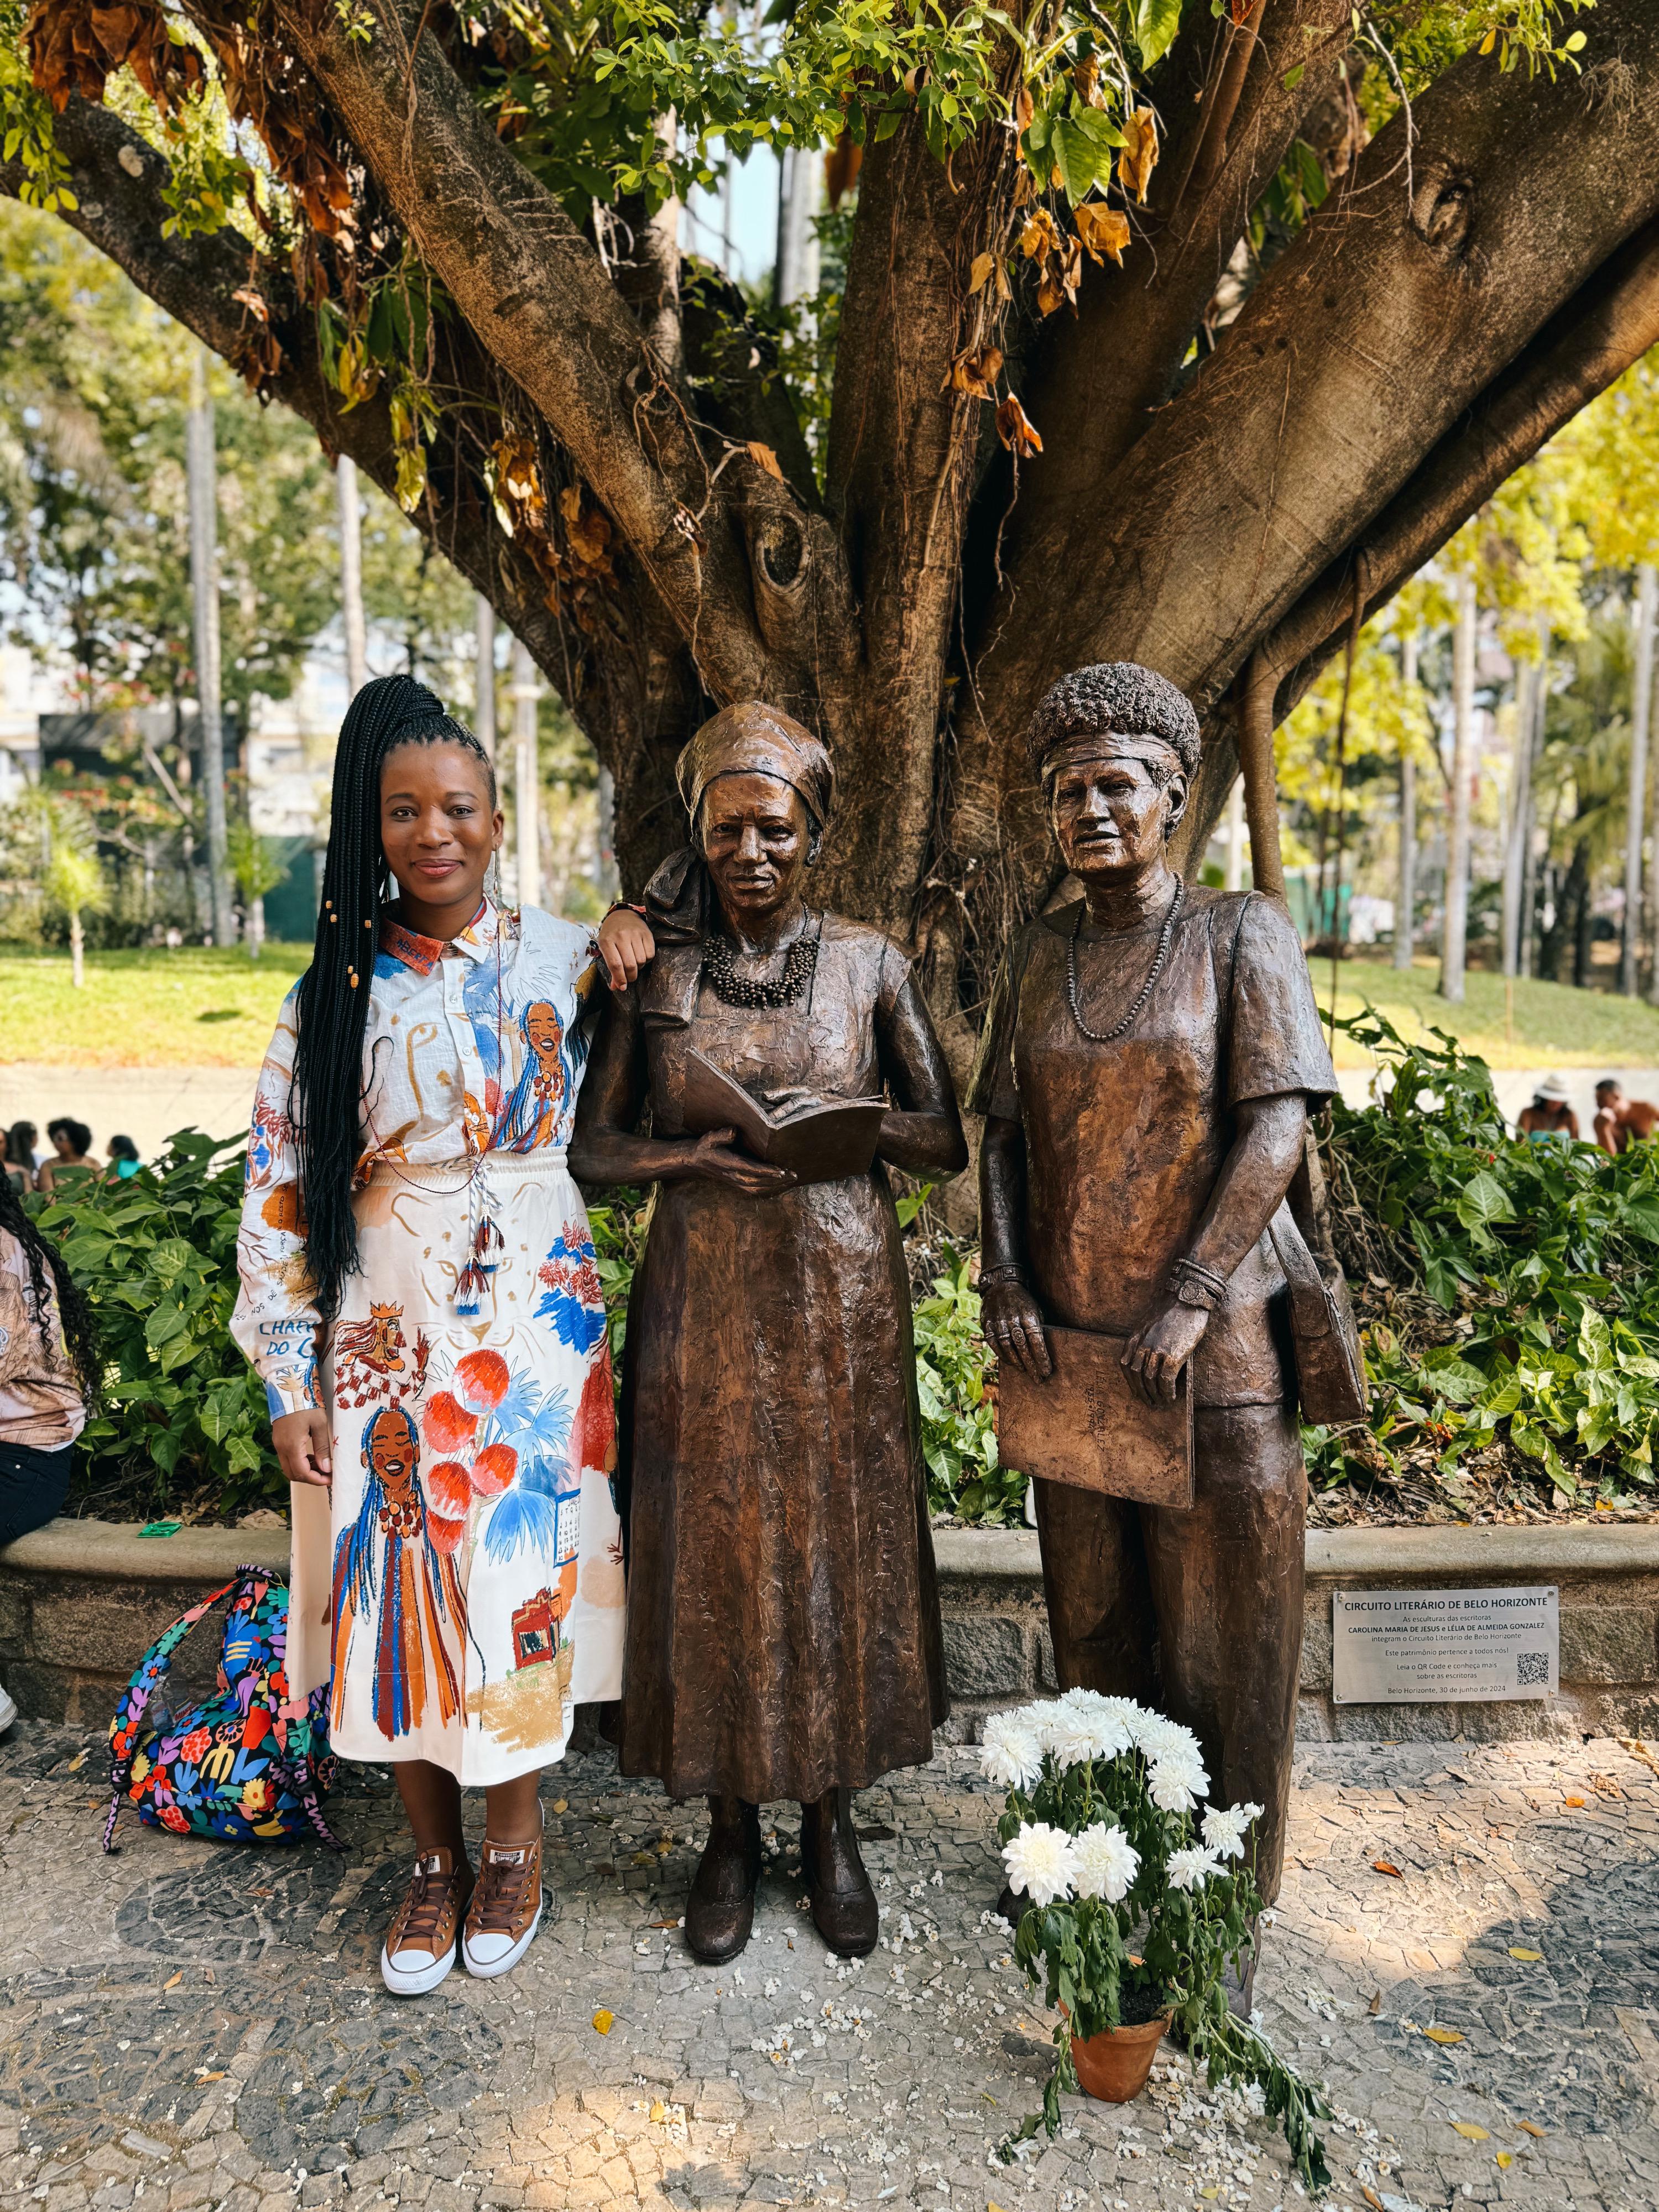 Foto de Etiene Martins ao lado das estátuas de Carolina Maria de Jesus e Lélia Gonzalez, esculpidas na cor marrom e instaladas em um parque público, cercadas de plantas e árvores.